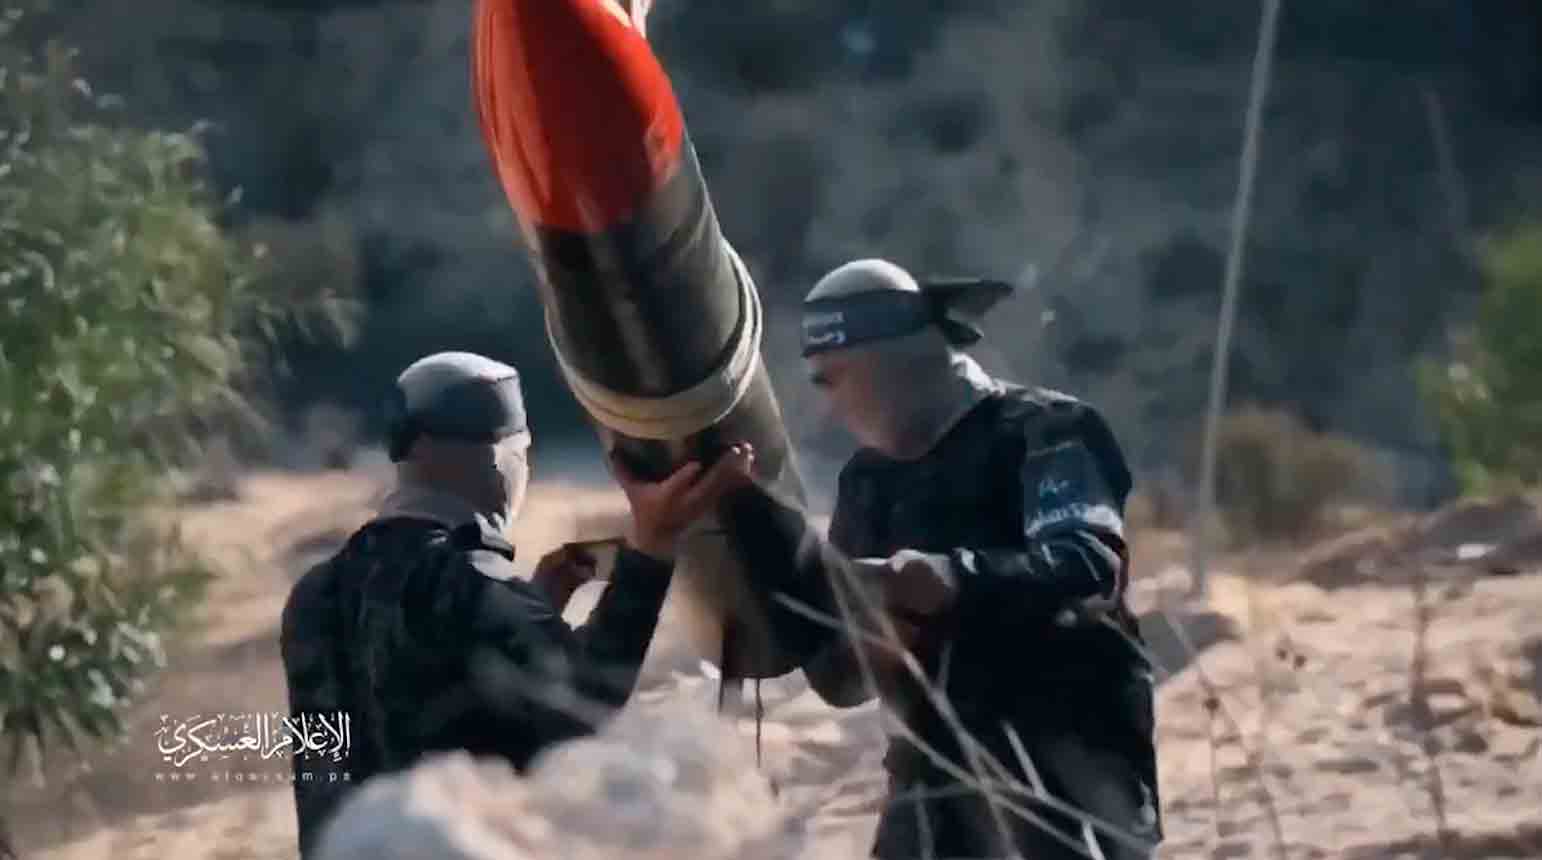 הסרטון מציג את חמאס בונה טילים באמצעות צנרת המוצאות מתשתיות הביוב. תמונה וסרטון: העתקה מטוויטר